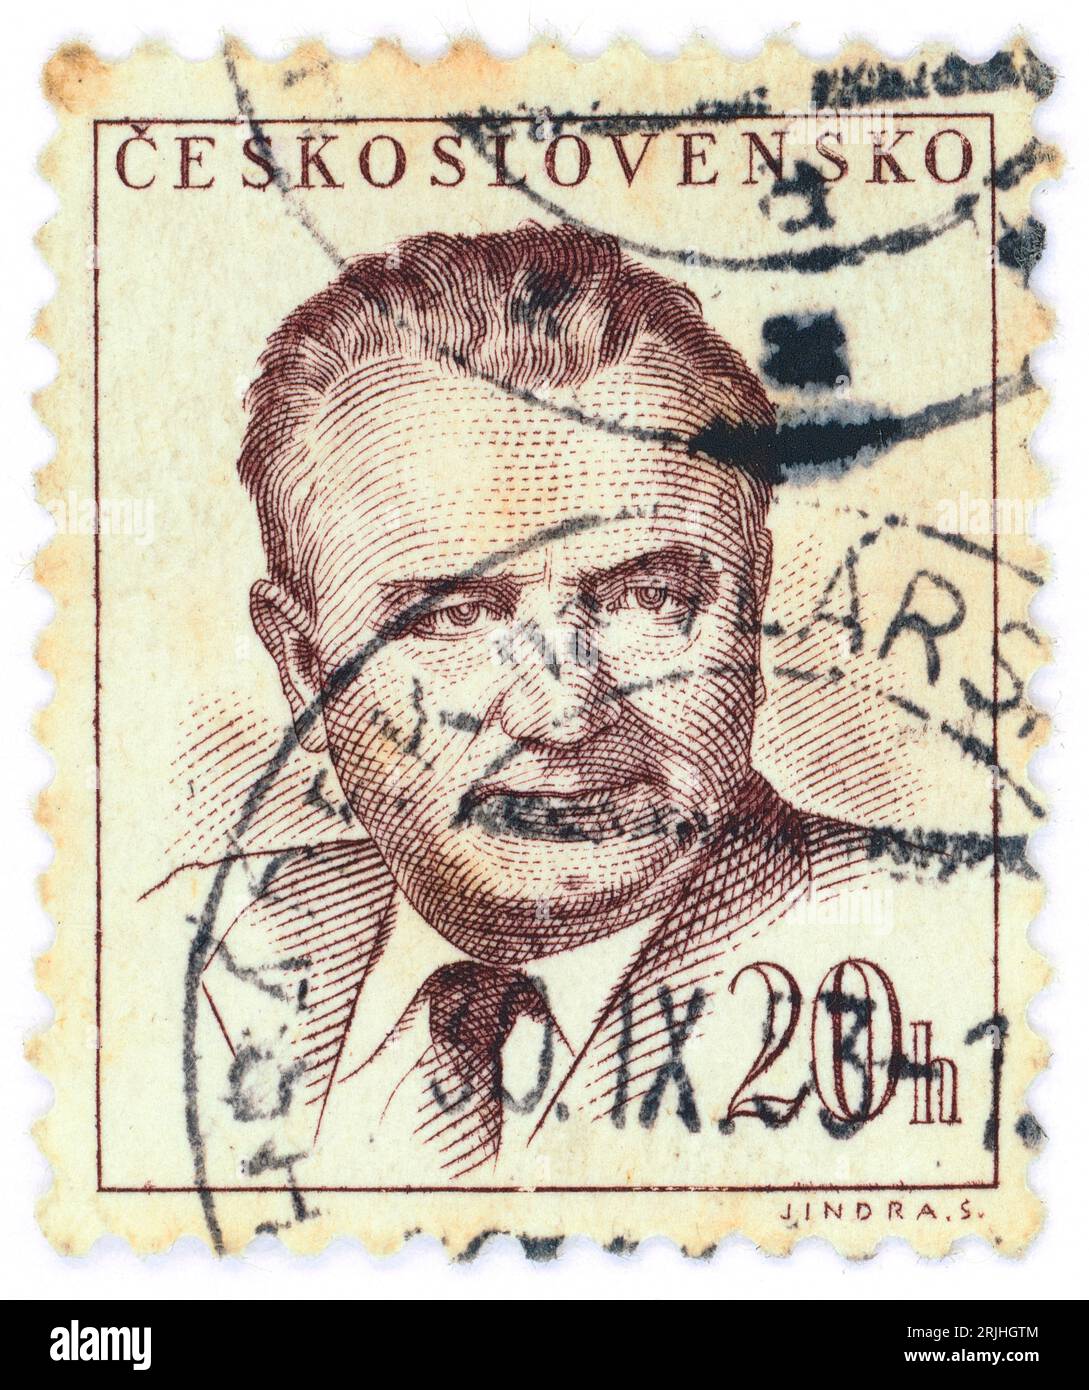 Klement Gottwald (1896 – 1953). Timbre-poste émis en Tchécoslovaquie en 1948. Klement Gottwald était un homme politique communiste tchèque, qui a été le chef du Parti communiste de Tchécoslovaquie de 1929 jusqu'à sa mort en 1953 - nommé secrétaire général jusqu'en 1945 et président de 1945 à 1953. Il fut le premier dirigeant de la Tchécoslovaquie communiste de 1948 à 1953. Banque D'Images